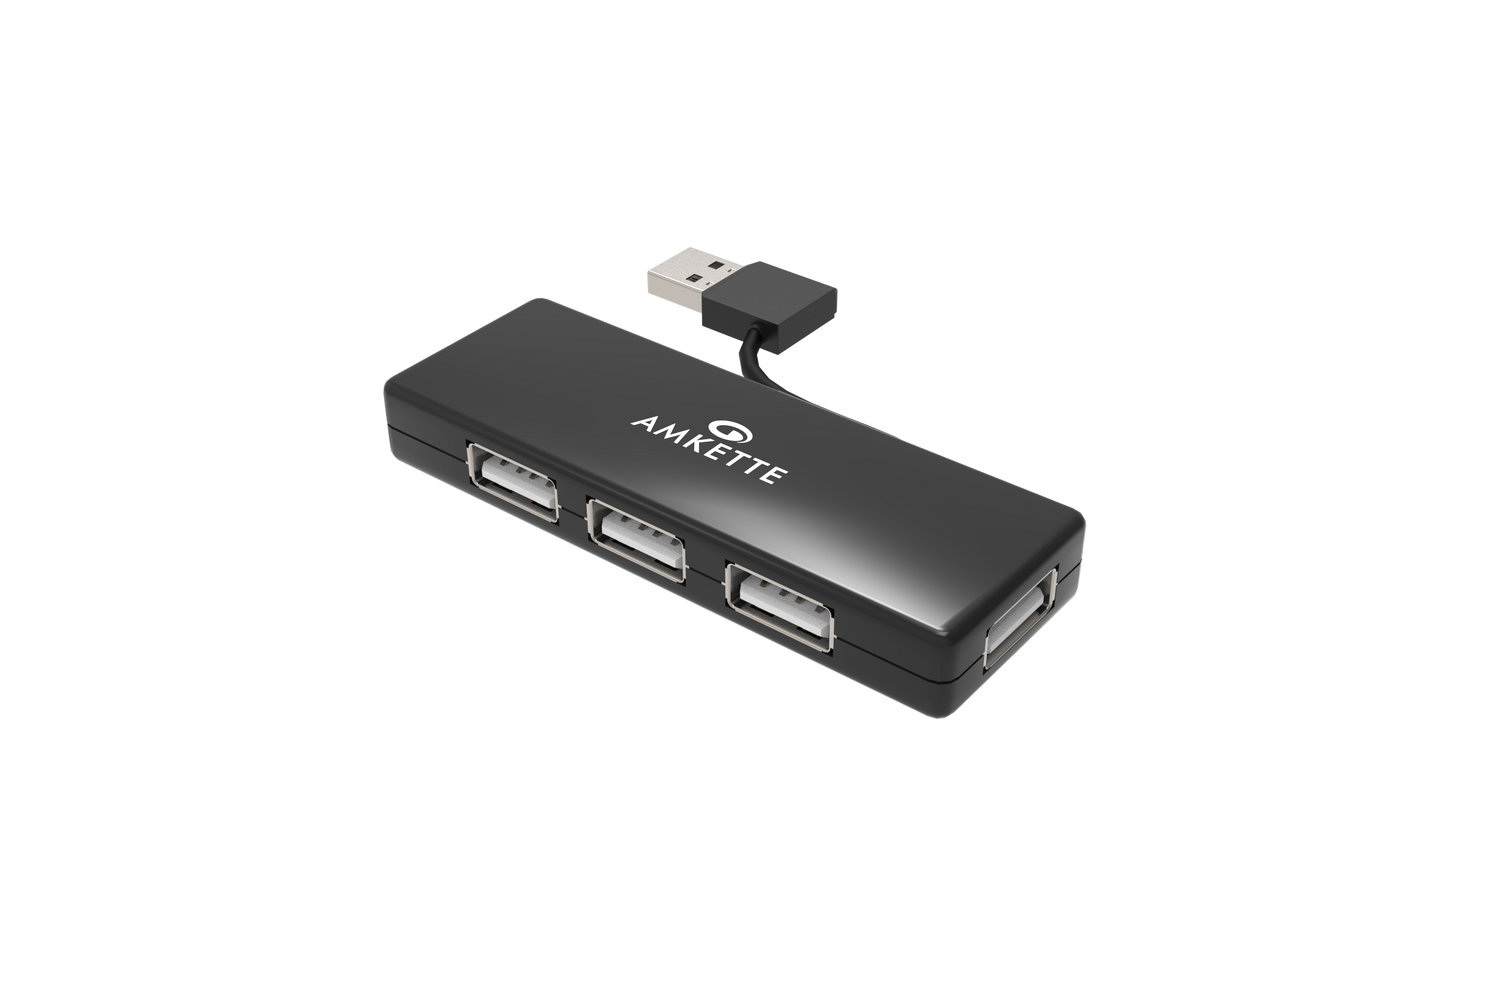 SuperSpeed USB 3.0 4 Port USB Hub